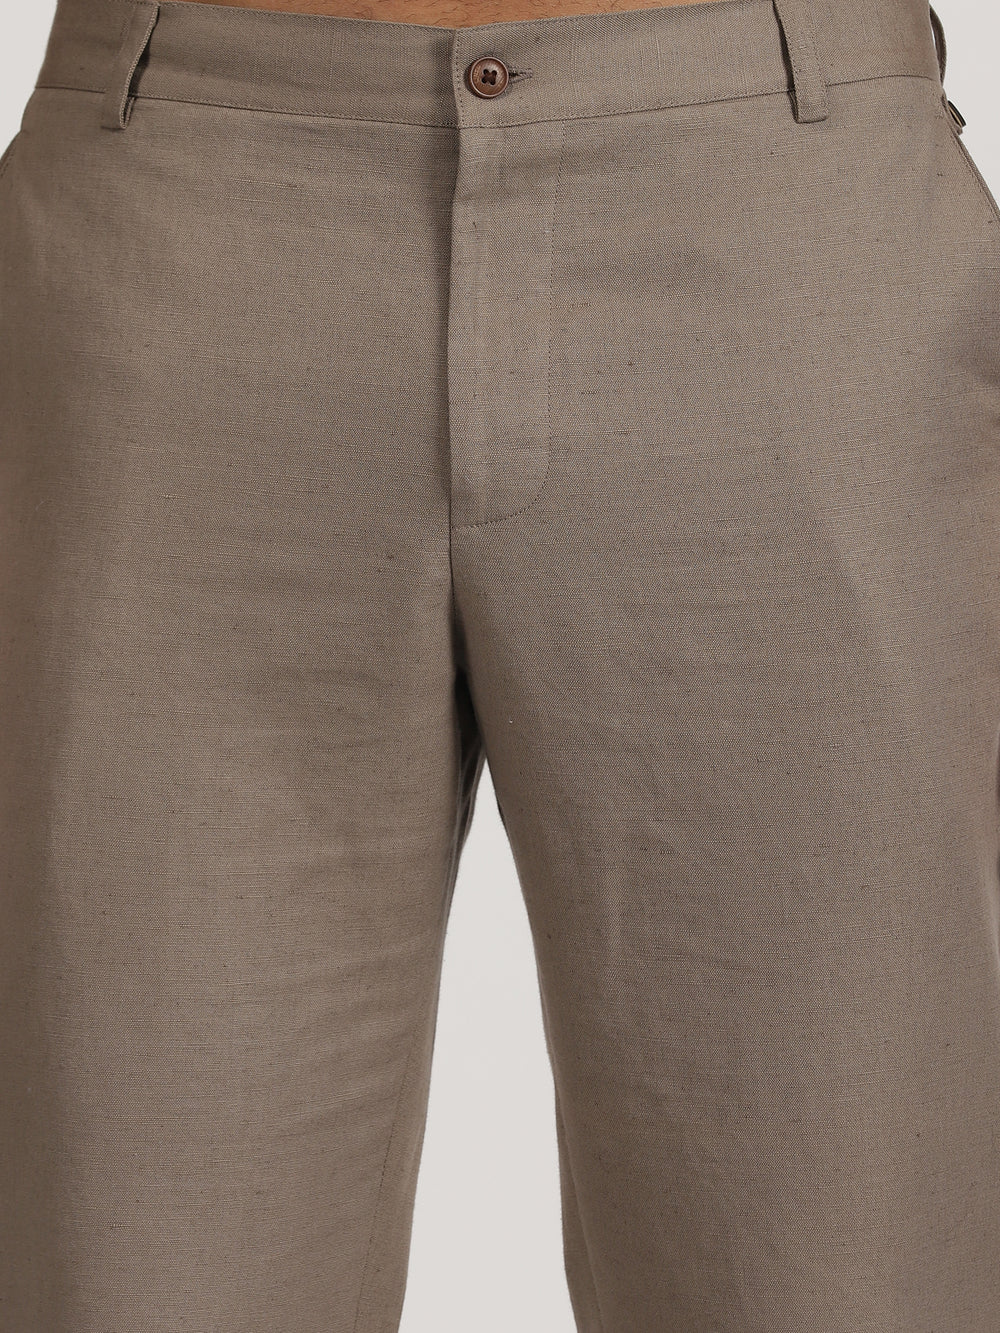 Ian Chino - Linen Trousers - Khaki Brown